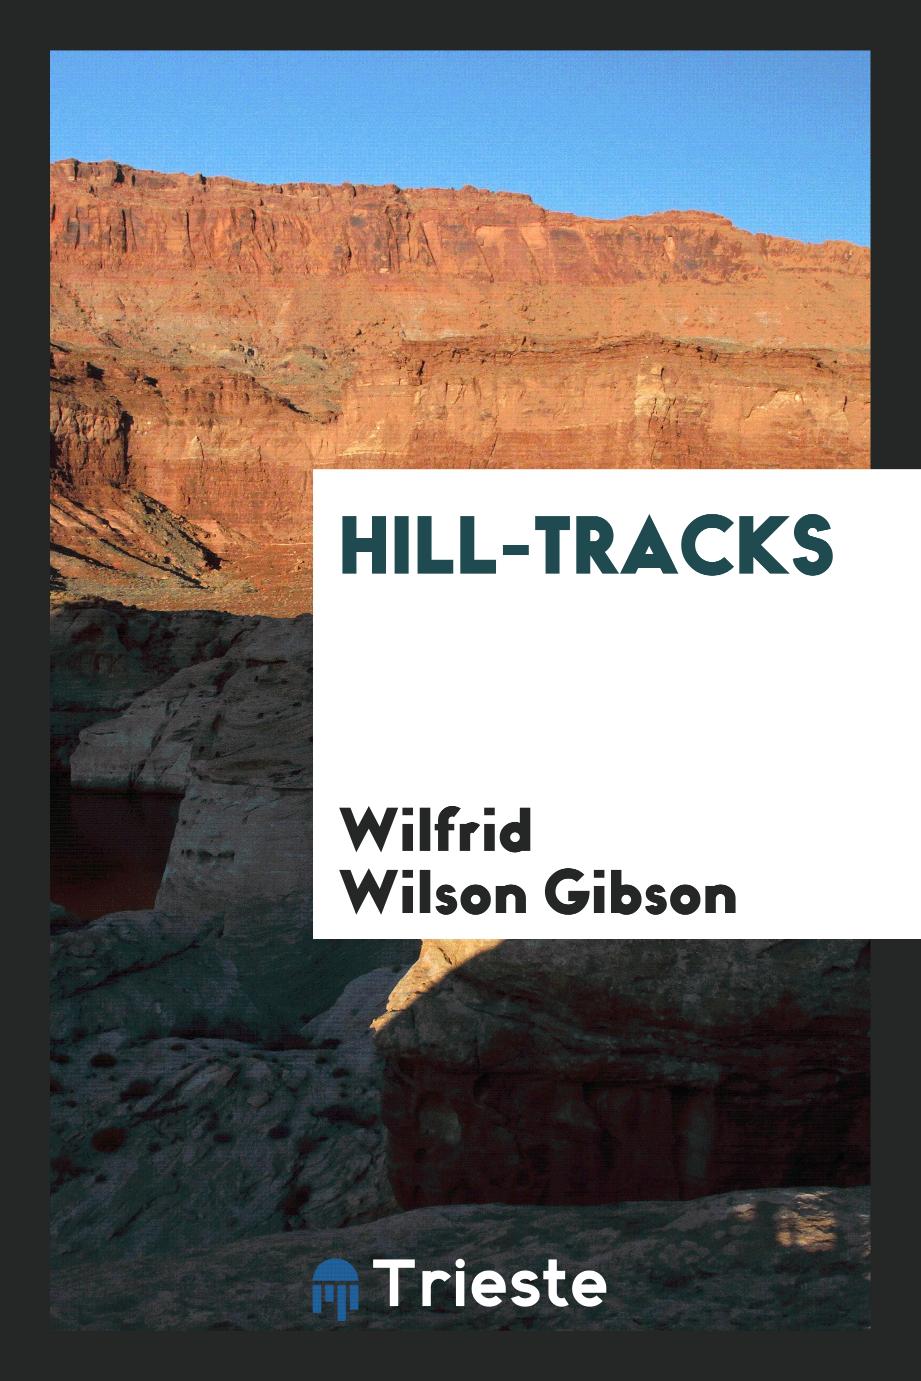 Hill-tracks